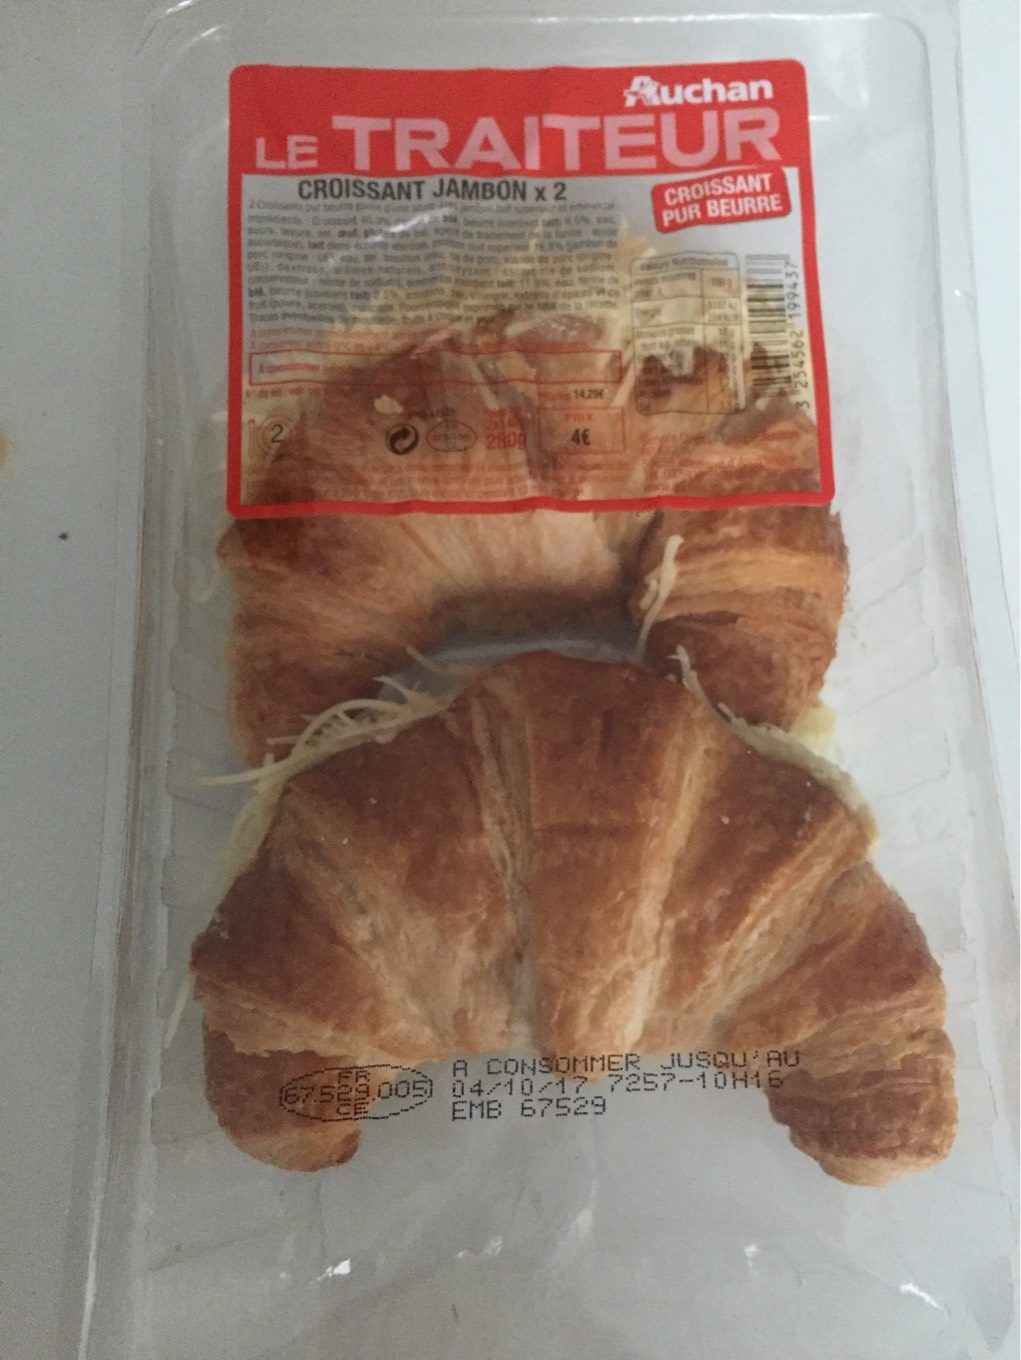 Croissant jambon - Product - fr